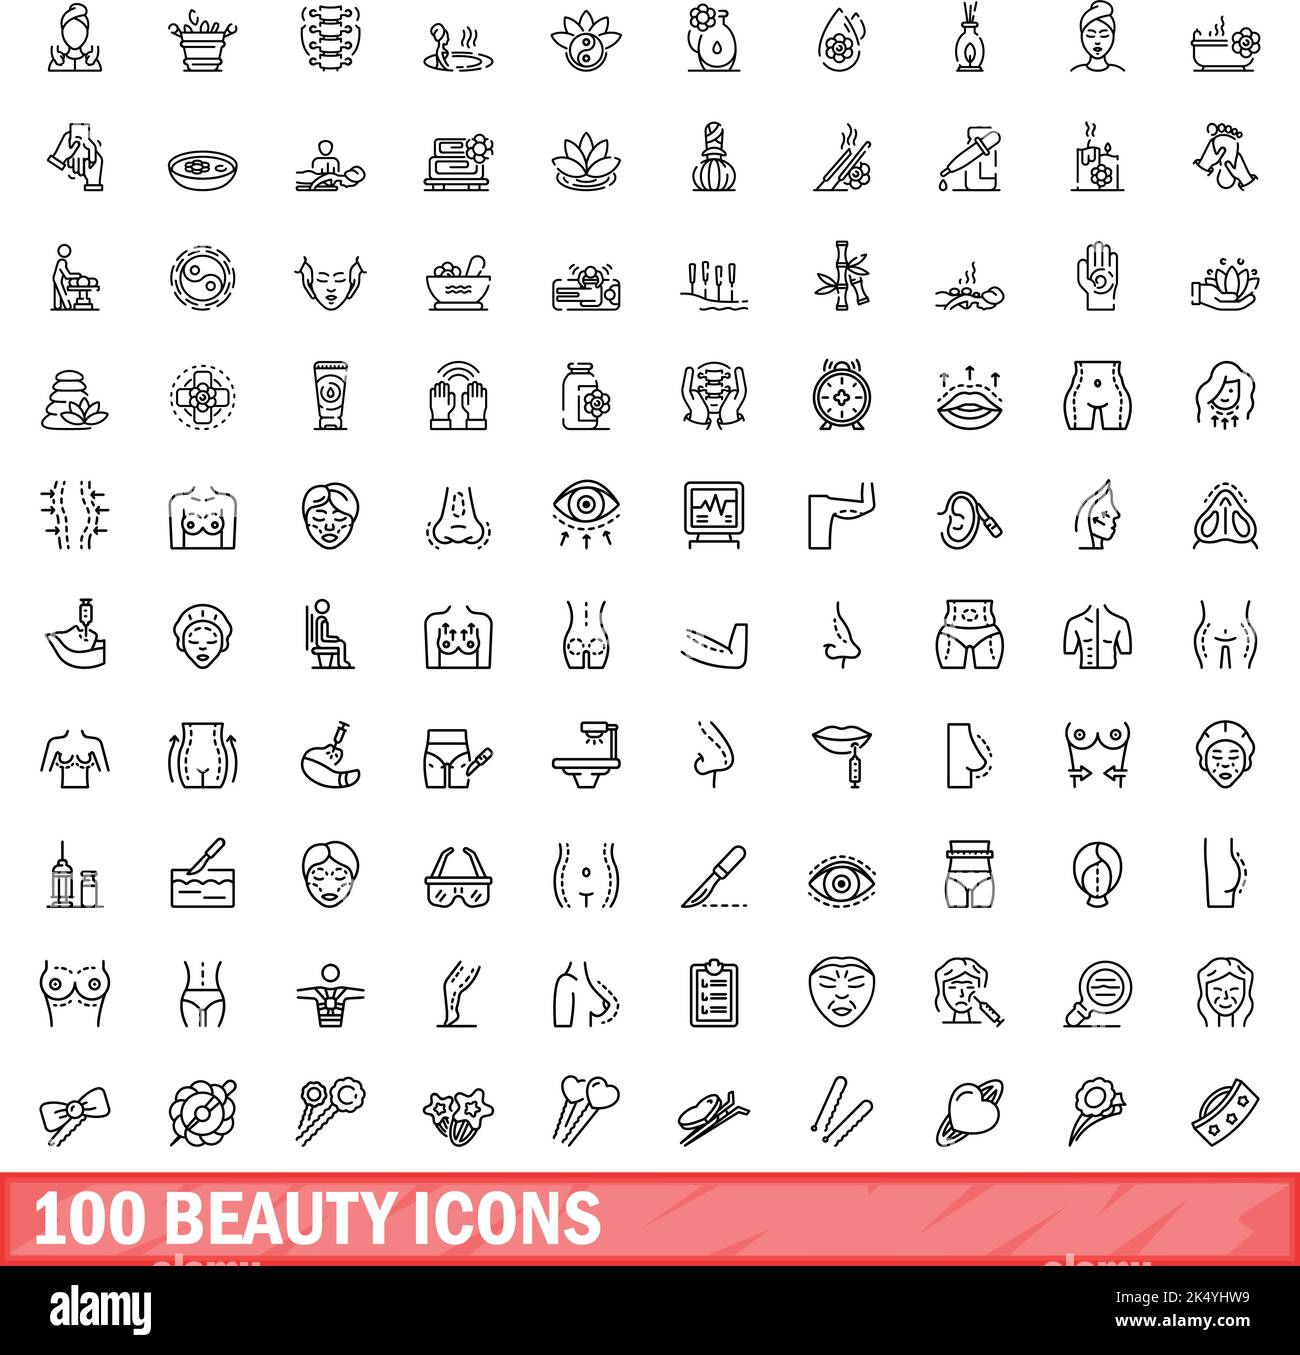 100 Beauty-Ikonen-Set. Skizzieren Sie die Darstellung von 100 Vektorbildern für Schönheit, die isoliert auf weißem Hintergrund gesetzt wurden Stock Vektor